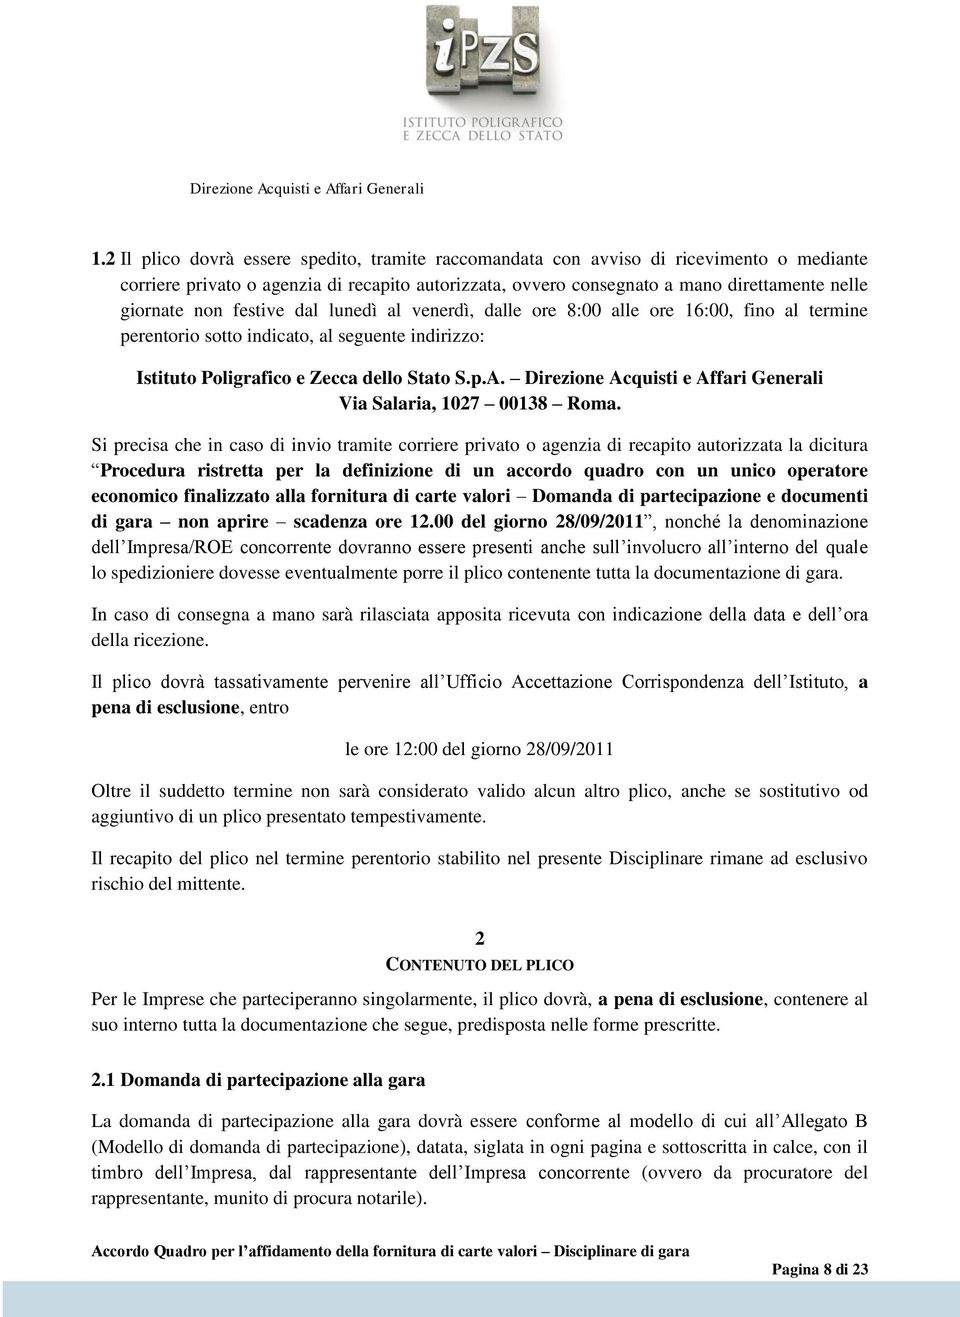 Direzione Acquisti e Affari Generali Via Salaria, 1027 00138 Roma.